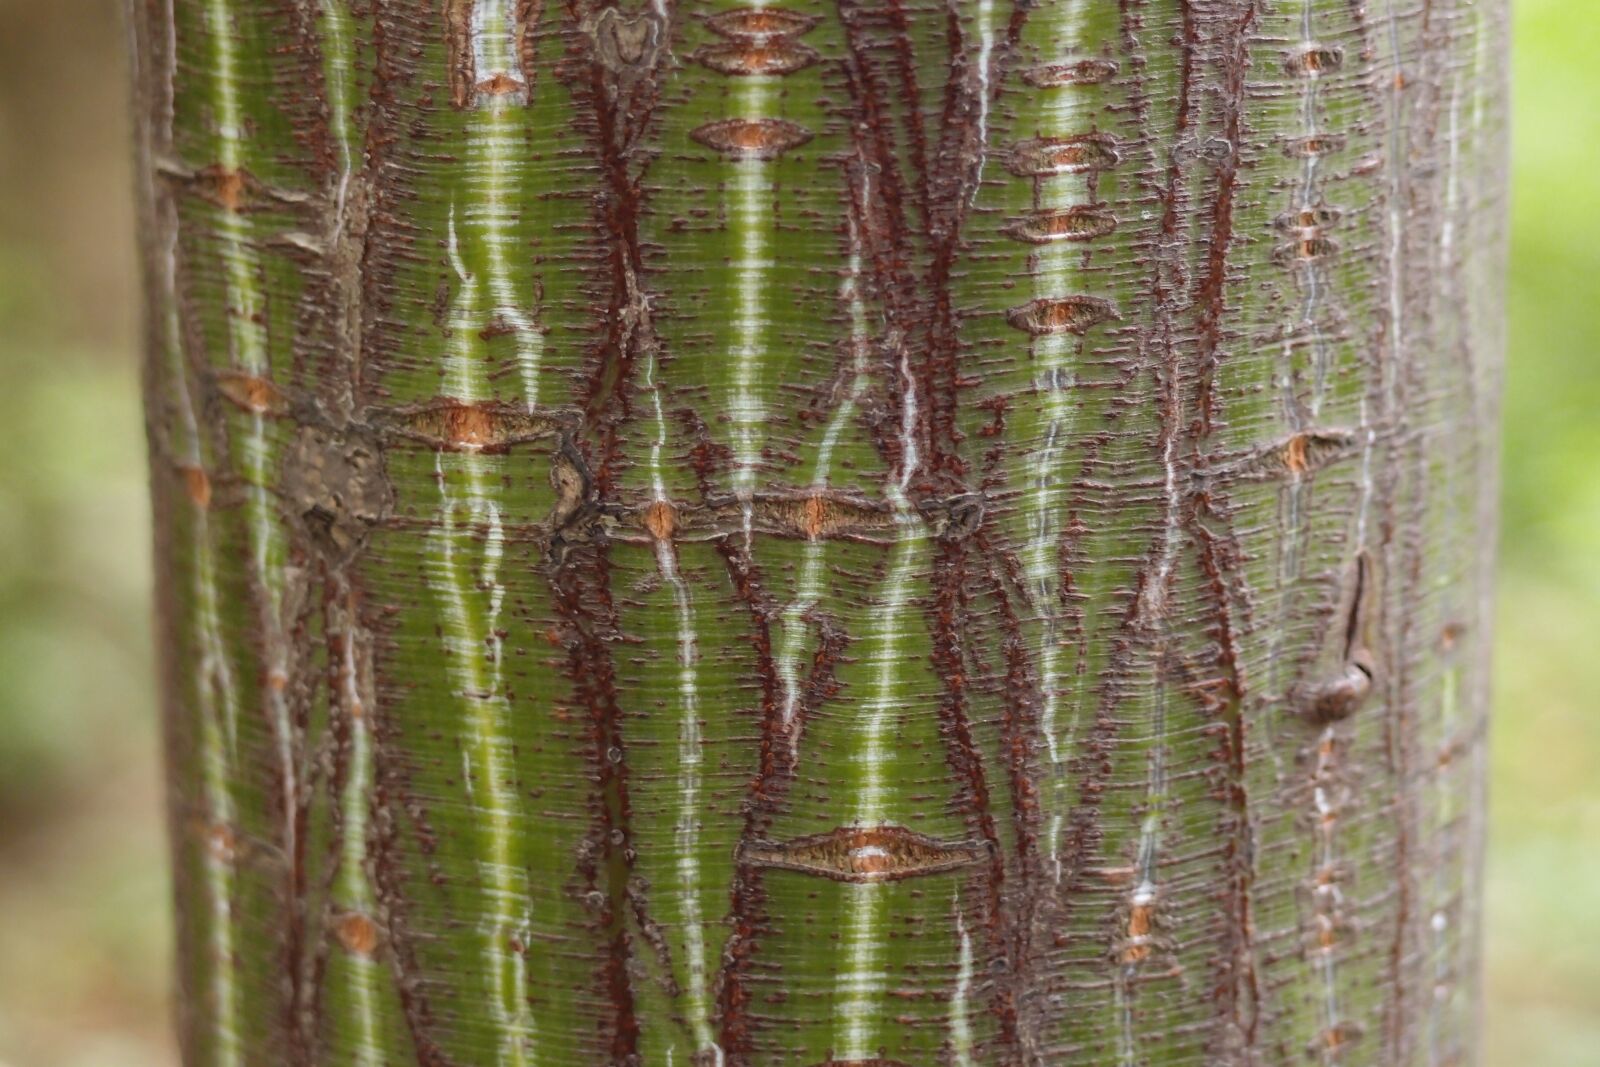 Olympus XZ-1 sample photo. Bark, tree, texture photography